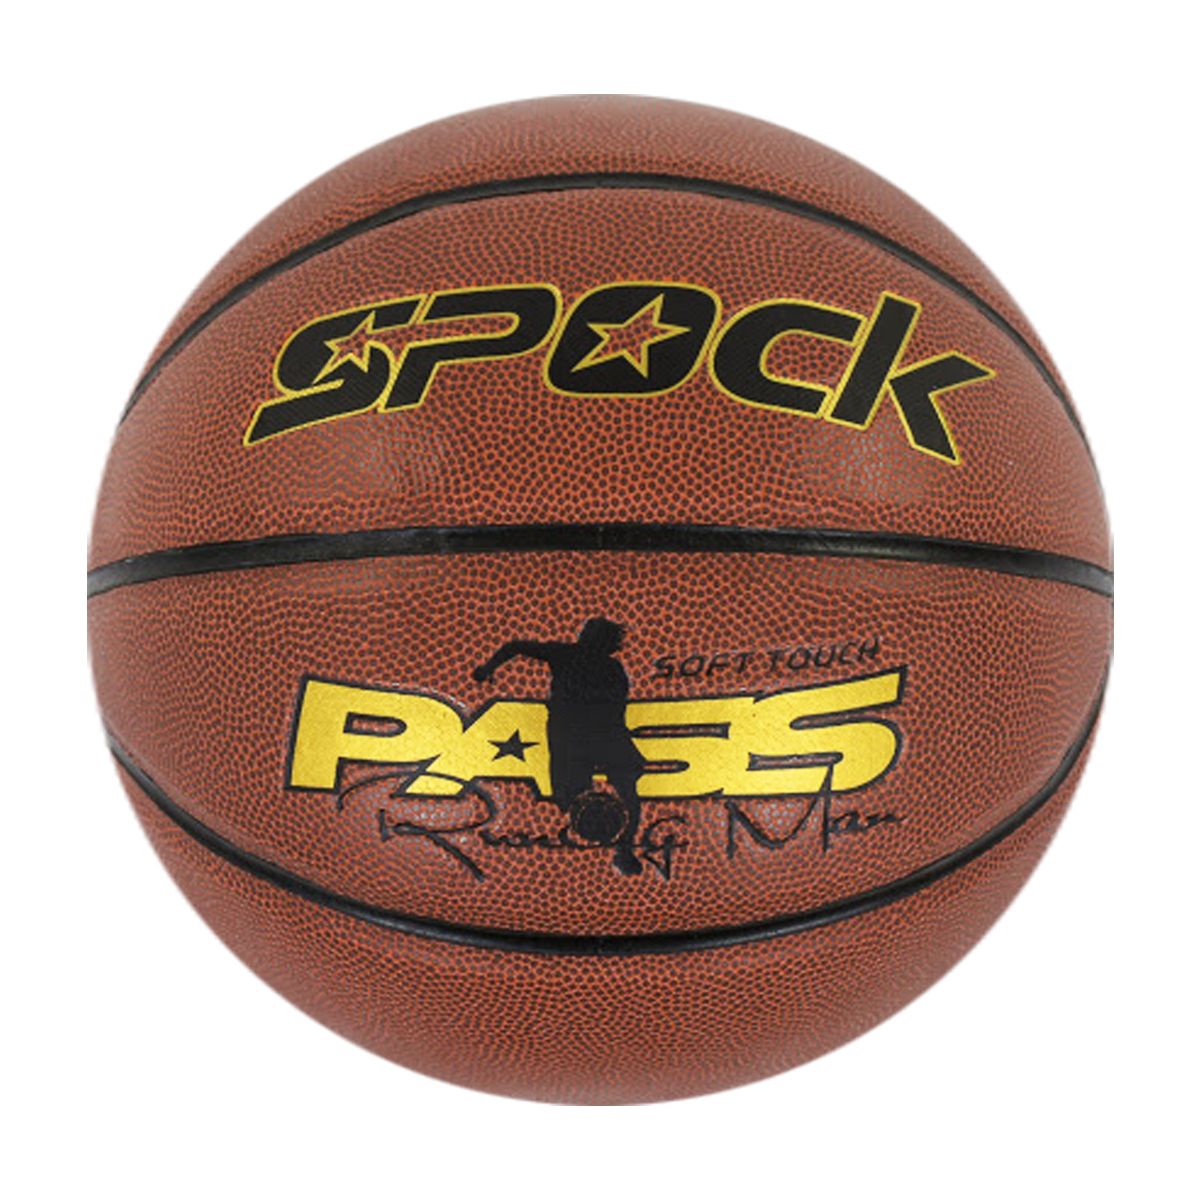 М'яч баскетбольний "Spock"